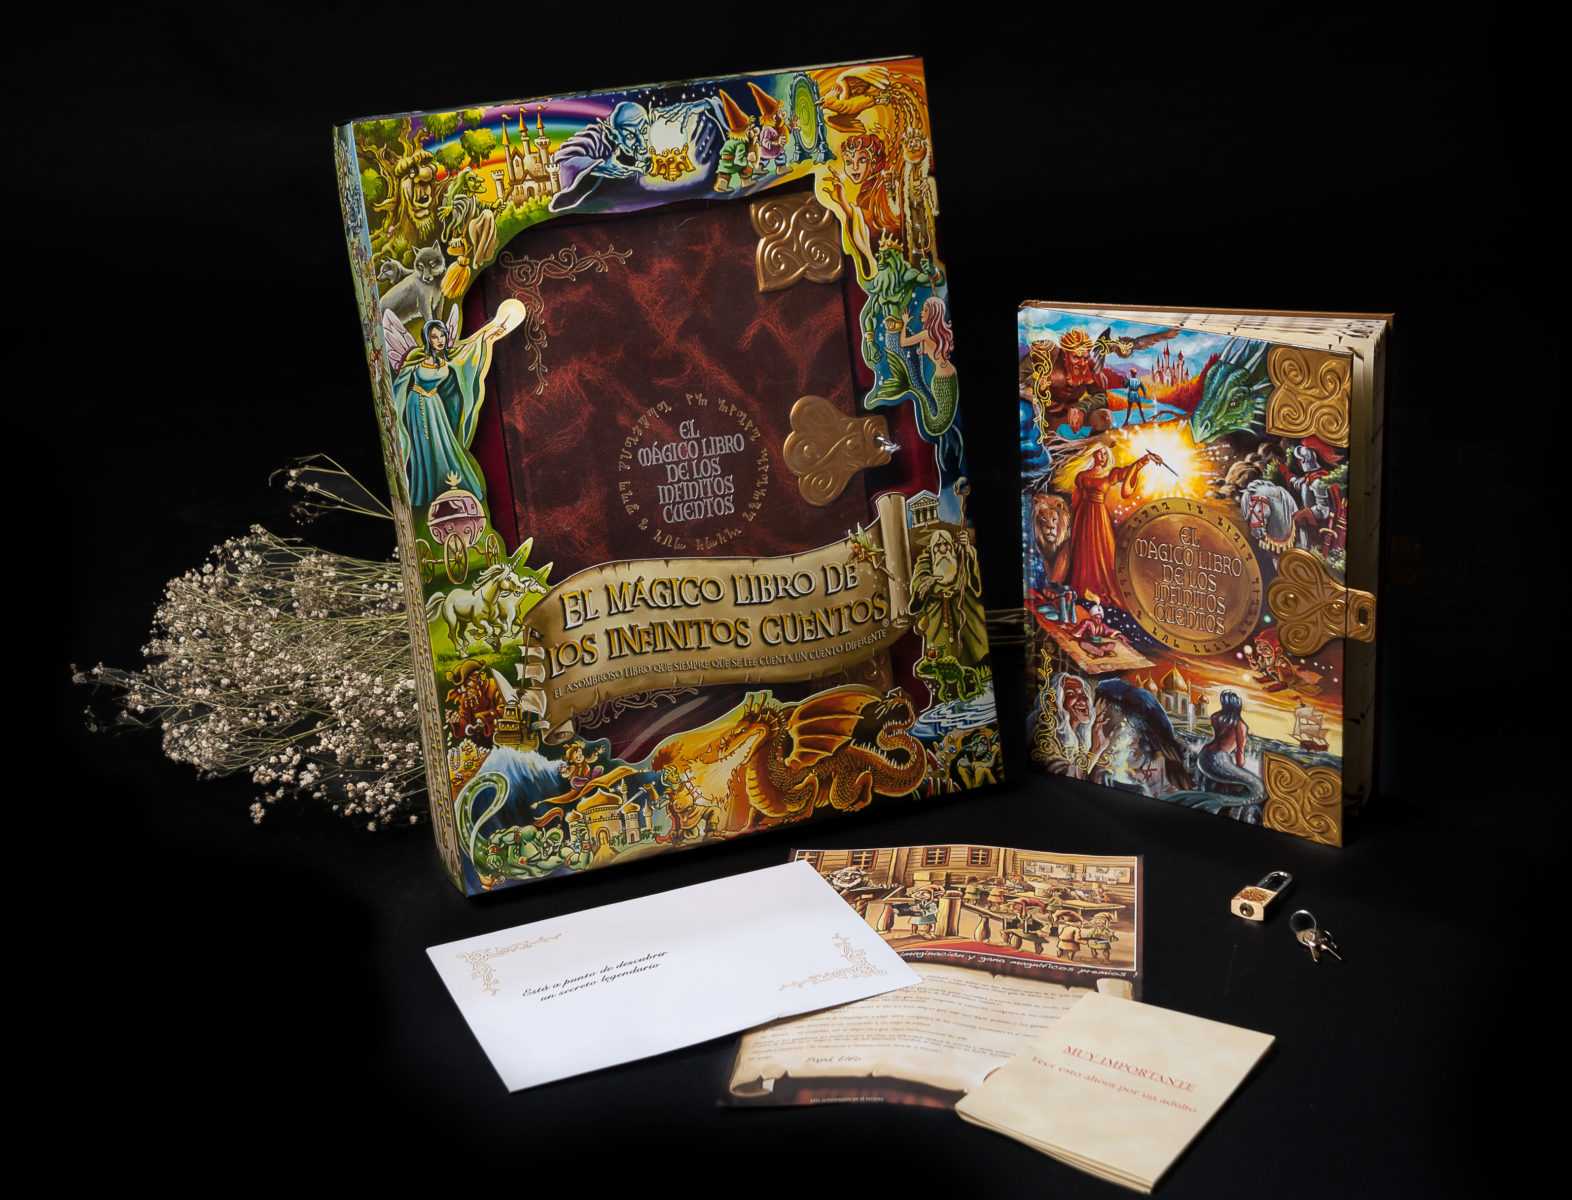 La Lampara Magicka Libro Pdf Download